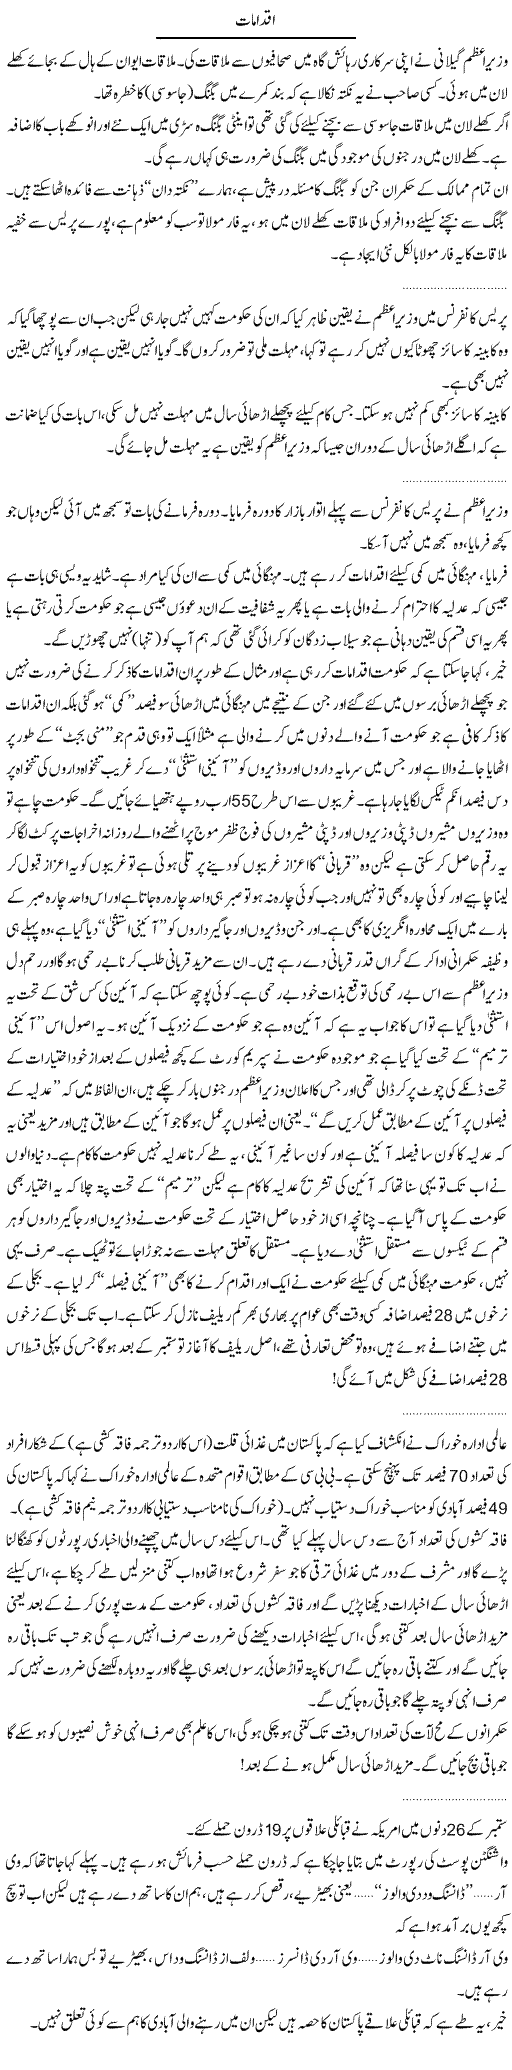 Steps Express Column Abdullah Tariq 28 September 2010